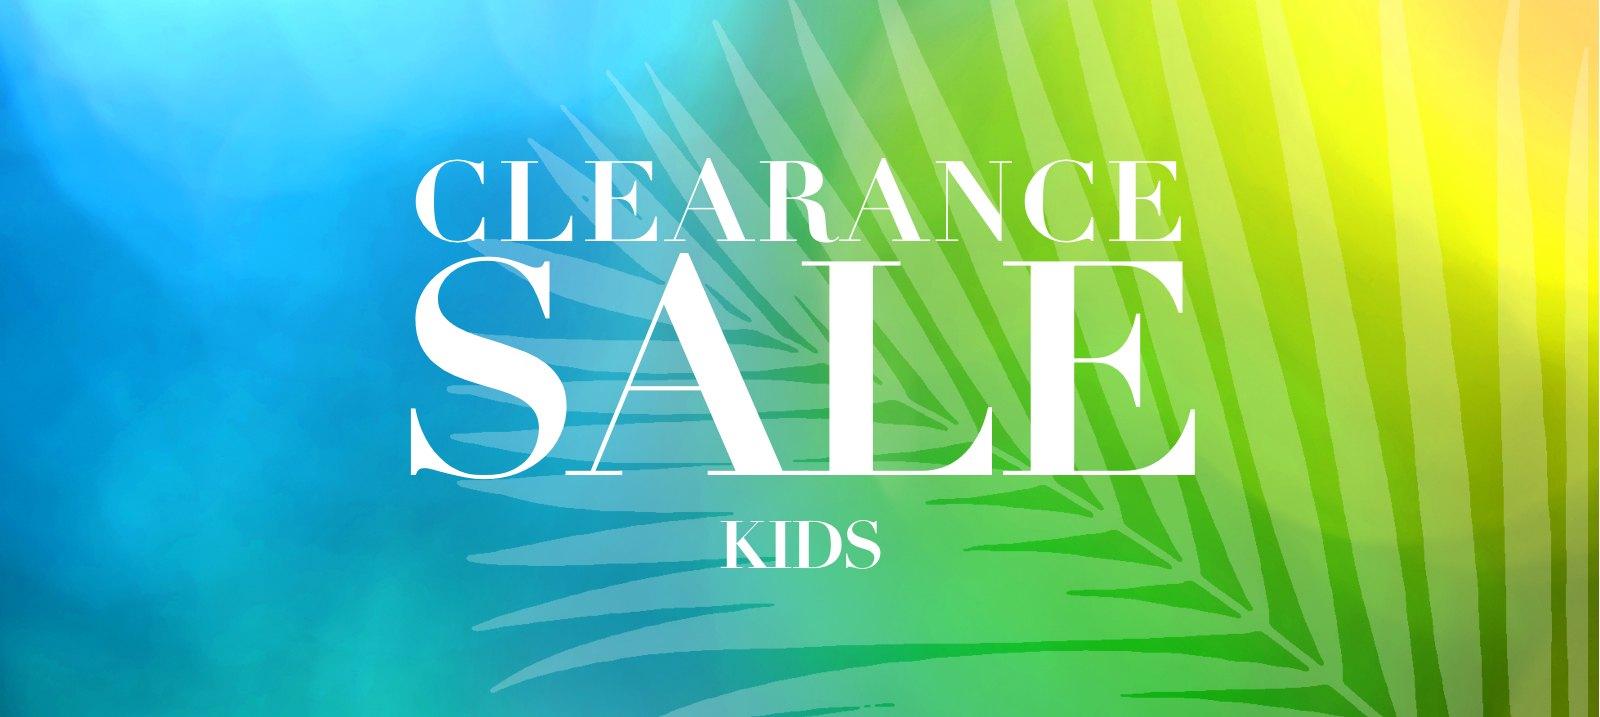 Clearance sale：Kids 